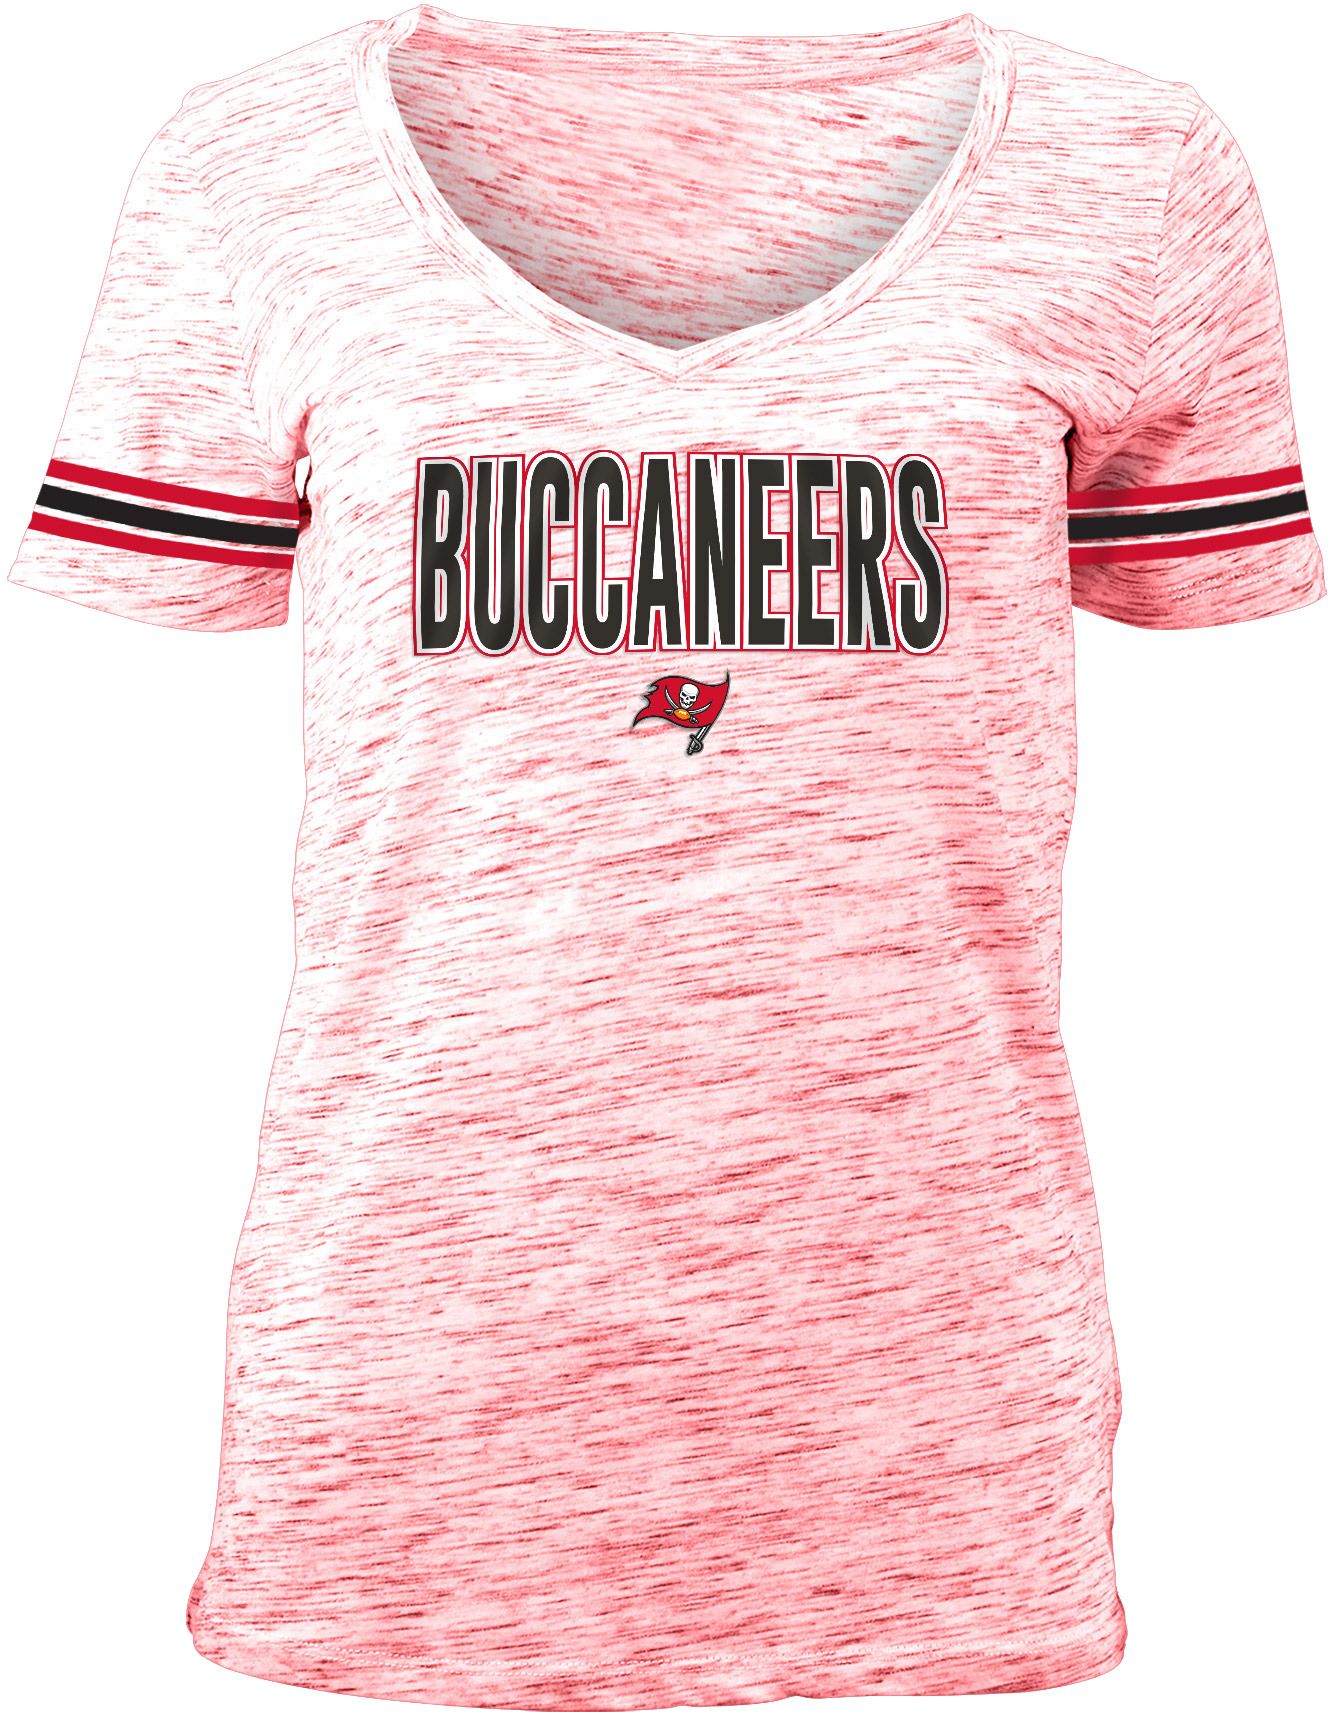 nfl buccaneers apparel